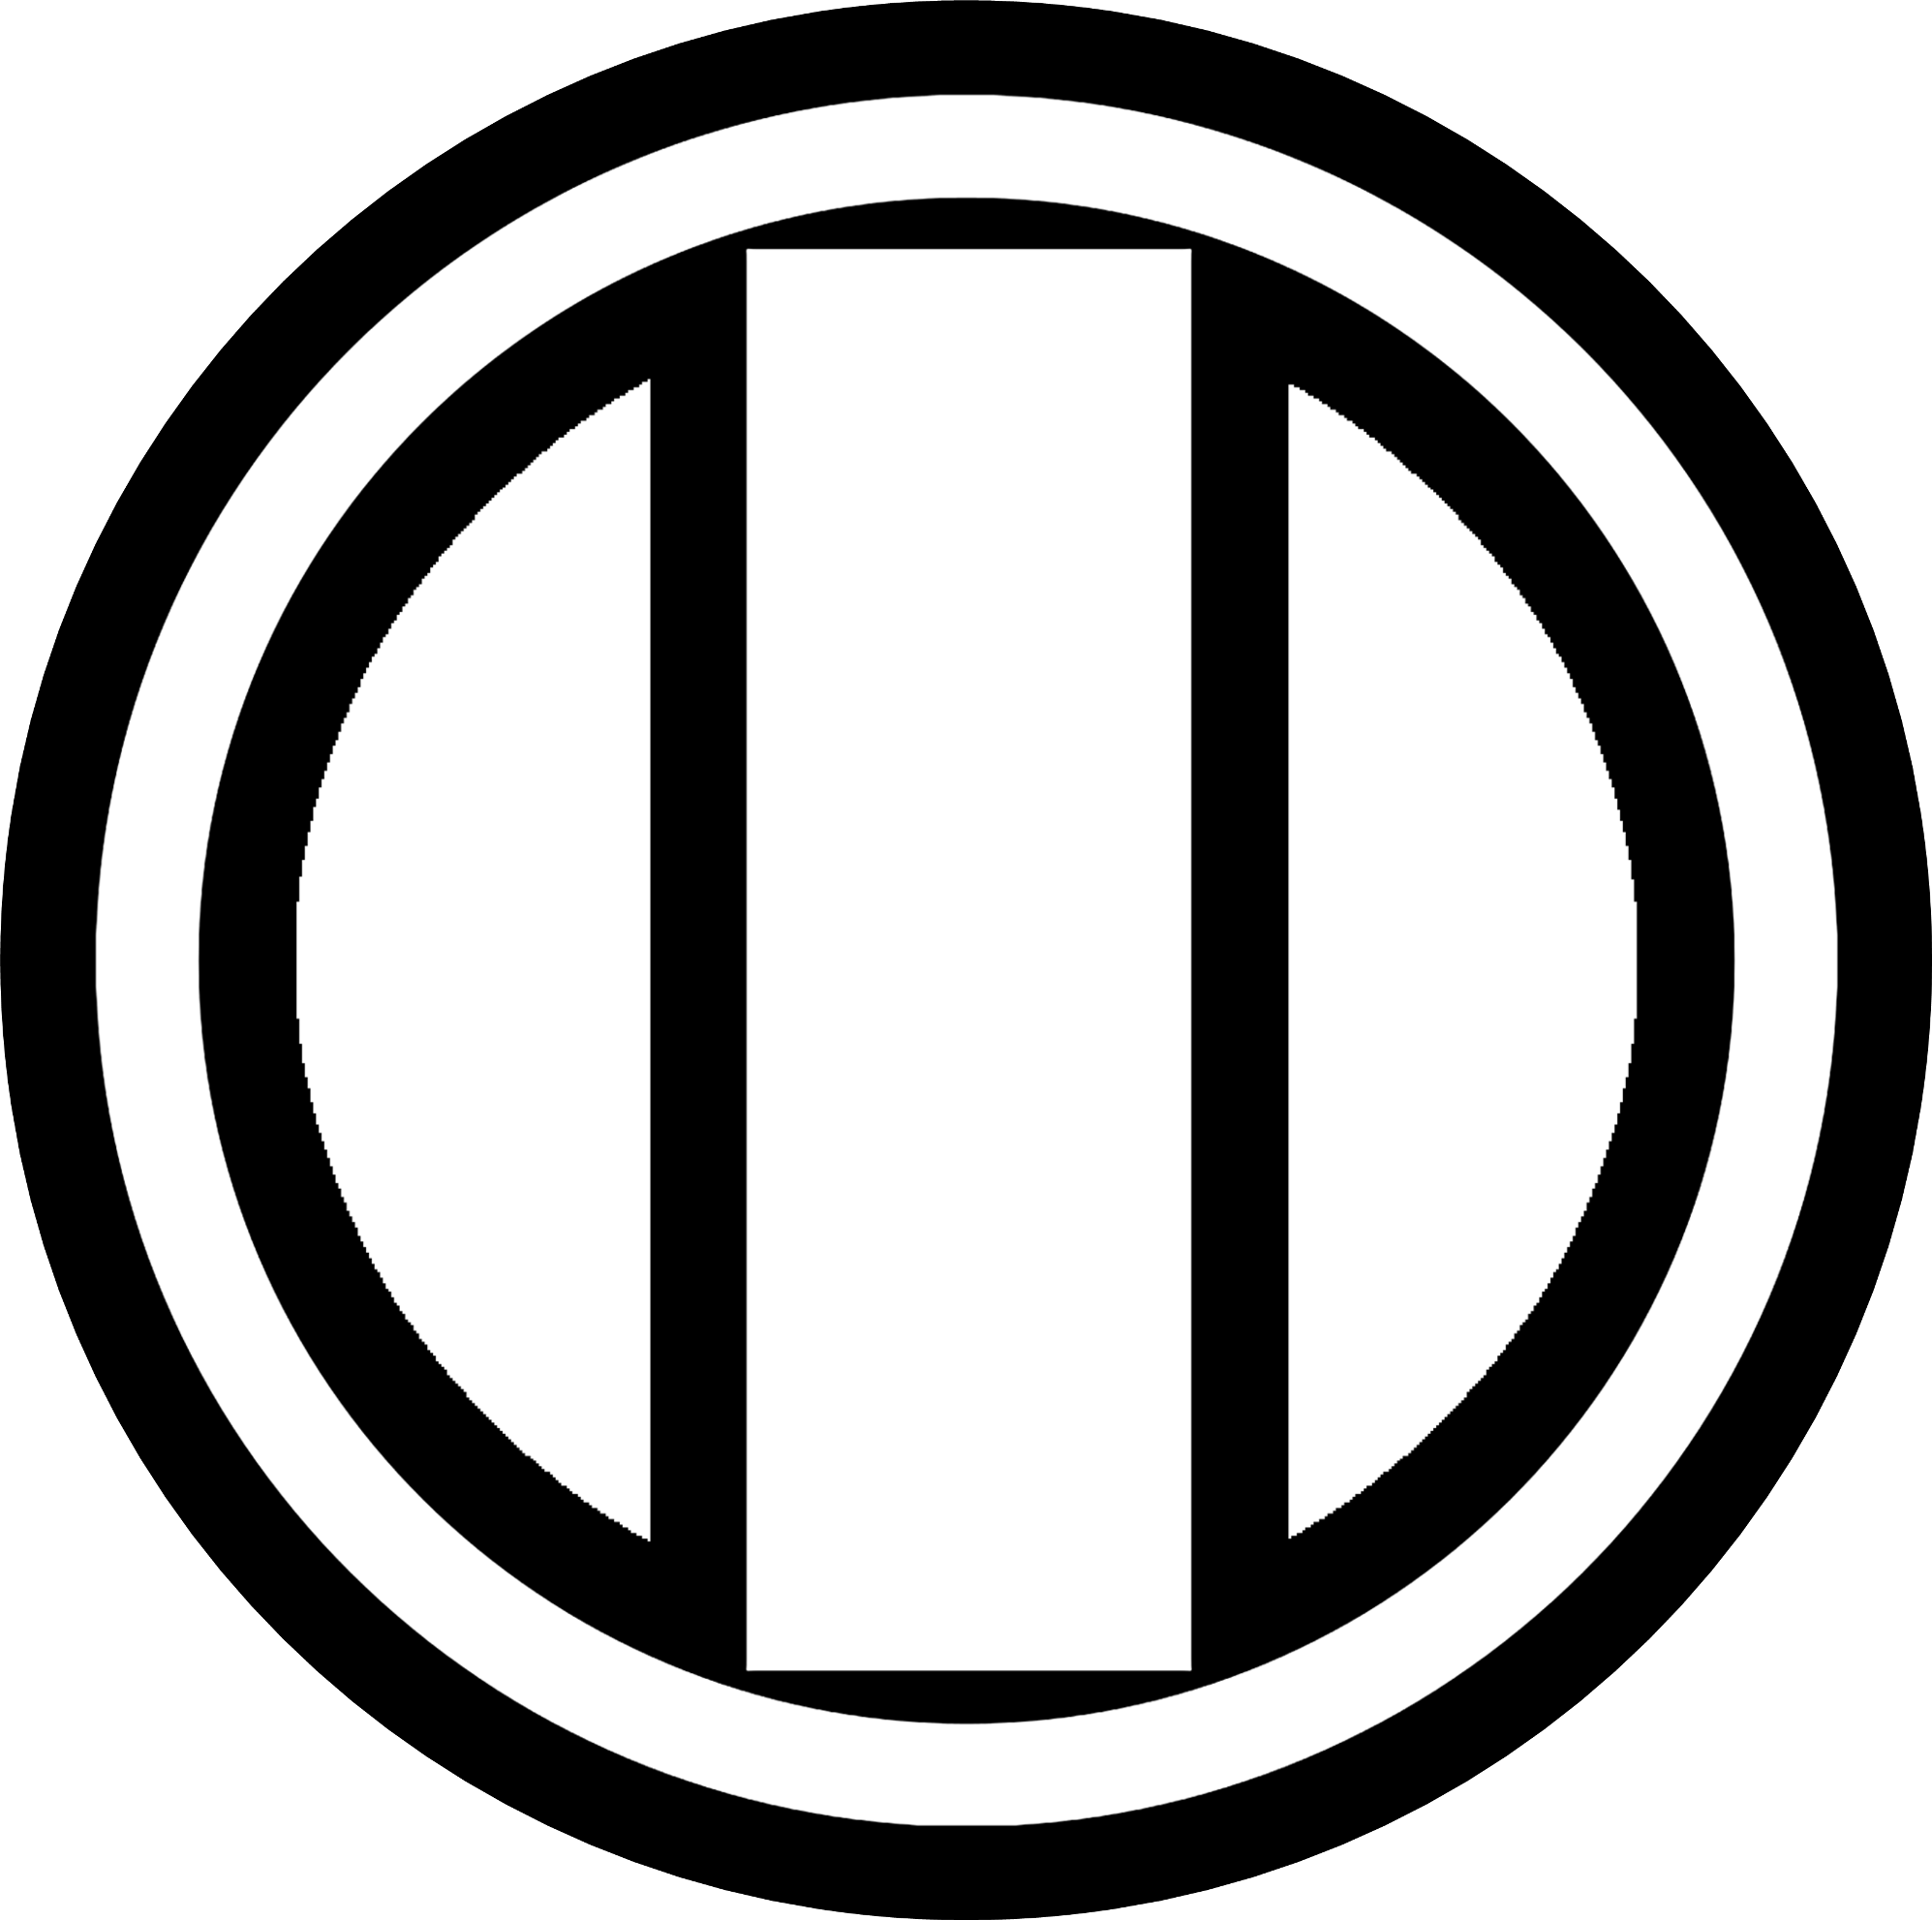 ОРТ лого 1995. Первый канал 1995. Телеканал ОРТ логотип. ОРТ 1997 логотип. Канал пд